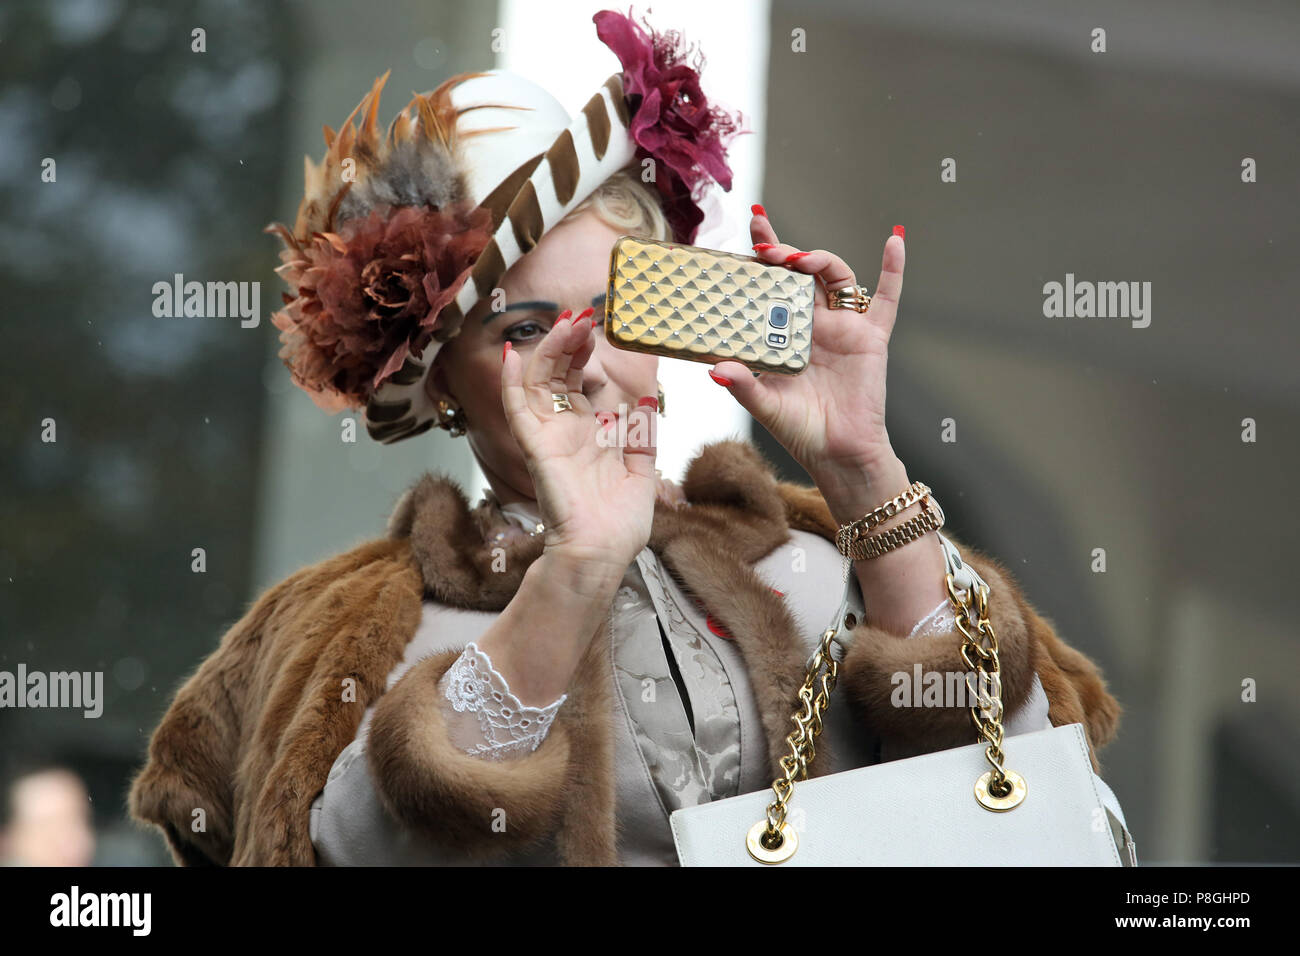 Berlin, Allemagne, élégamment vêtue femme prend une photo avec son smartphone Banque D'Images